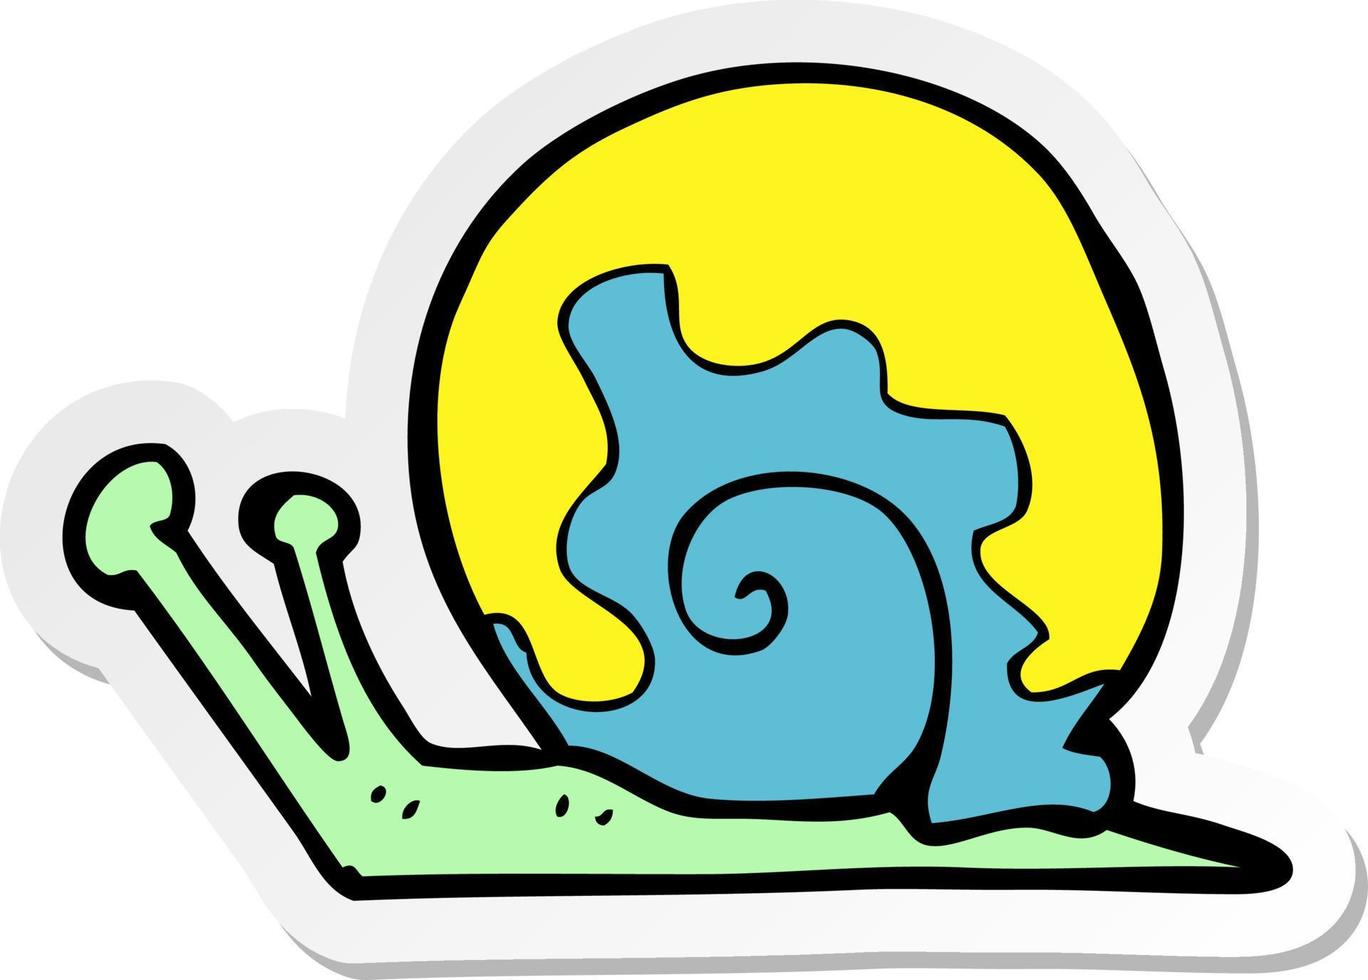 sticker of a cartoon snail vector